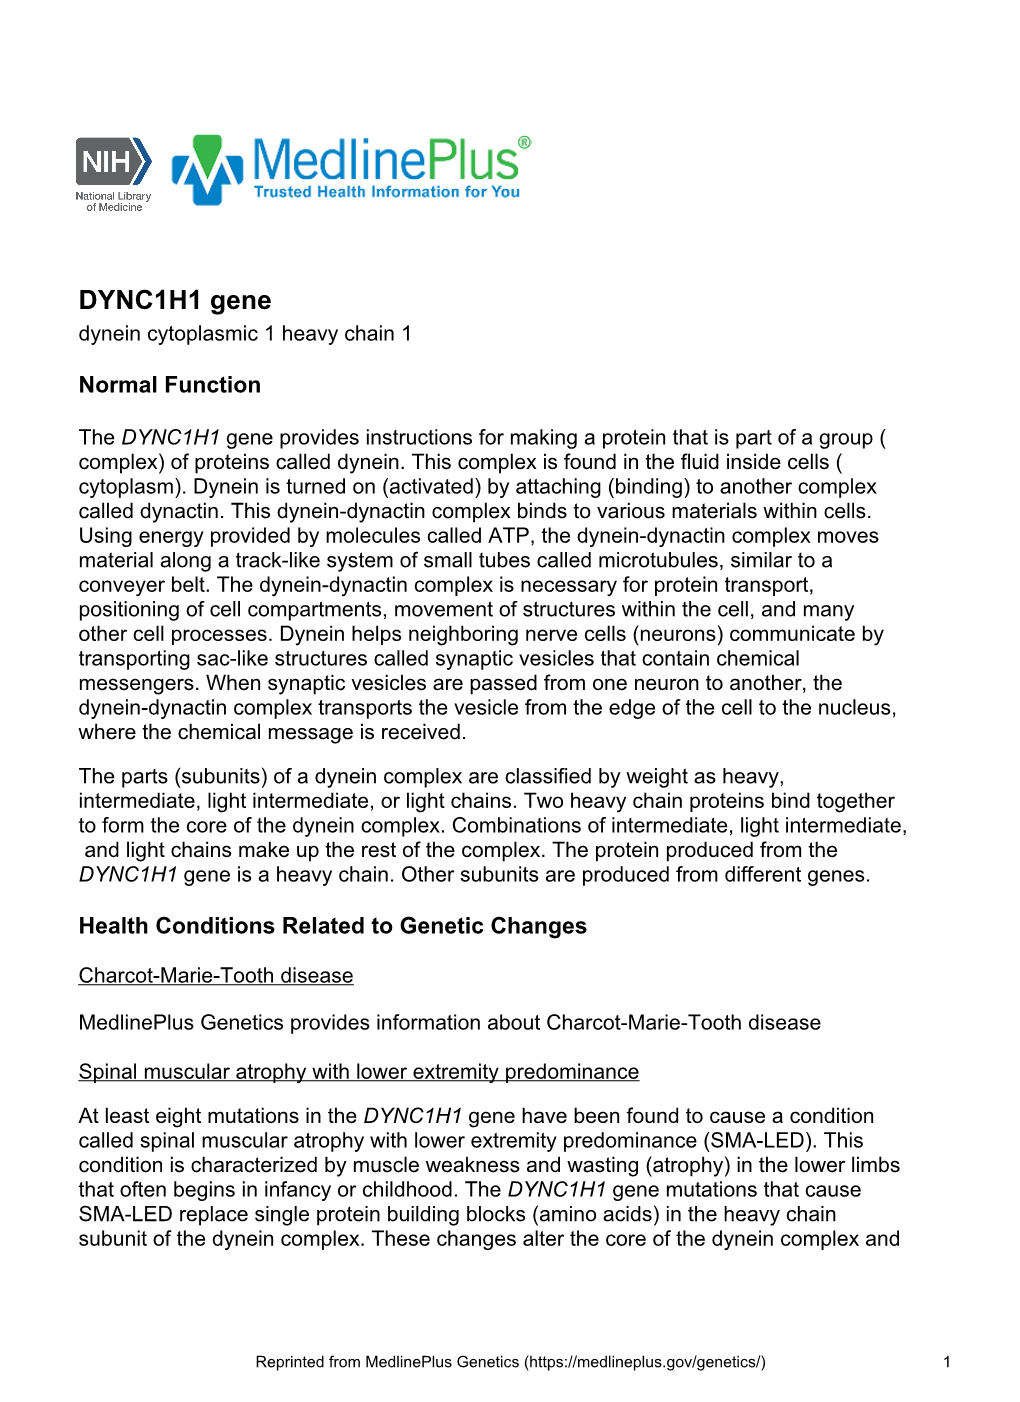 DYNC1H1 Gene Dynein Cytoplasmic 1 Heavy Chain 1